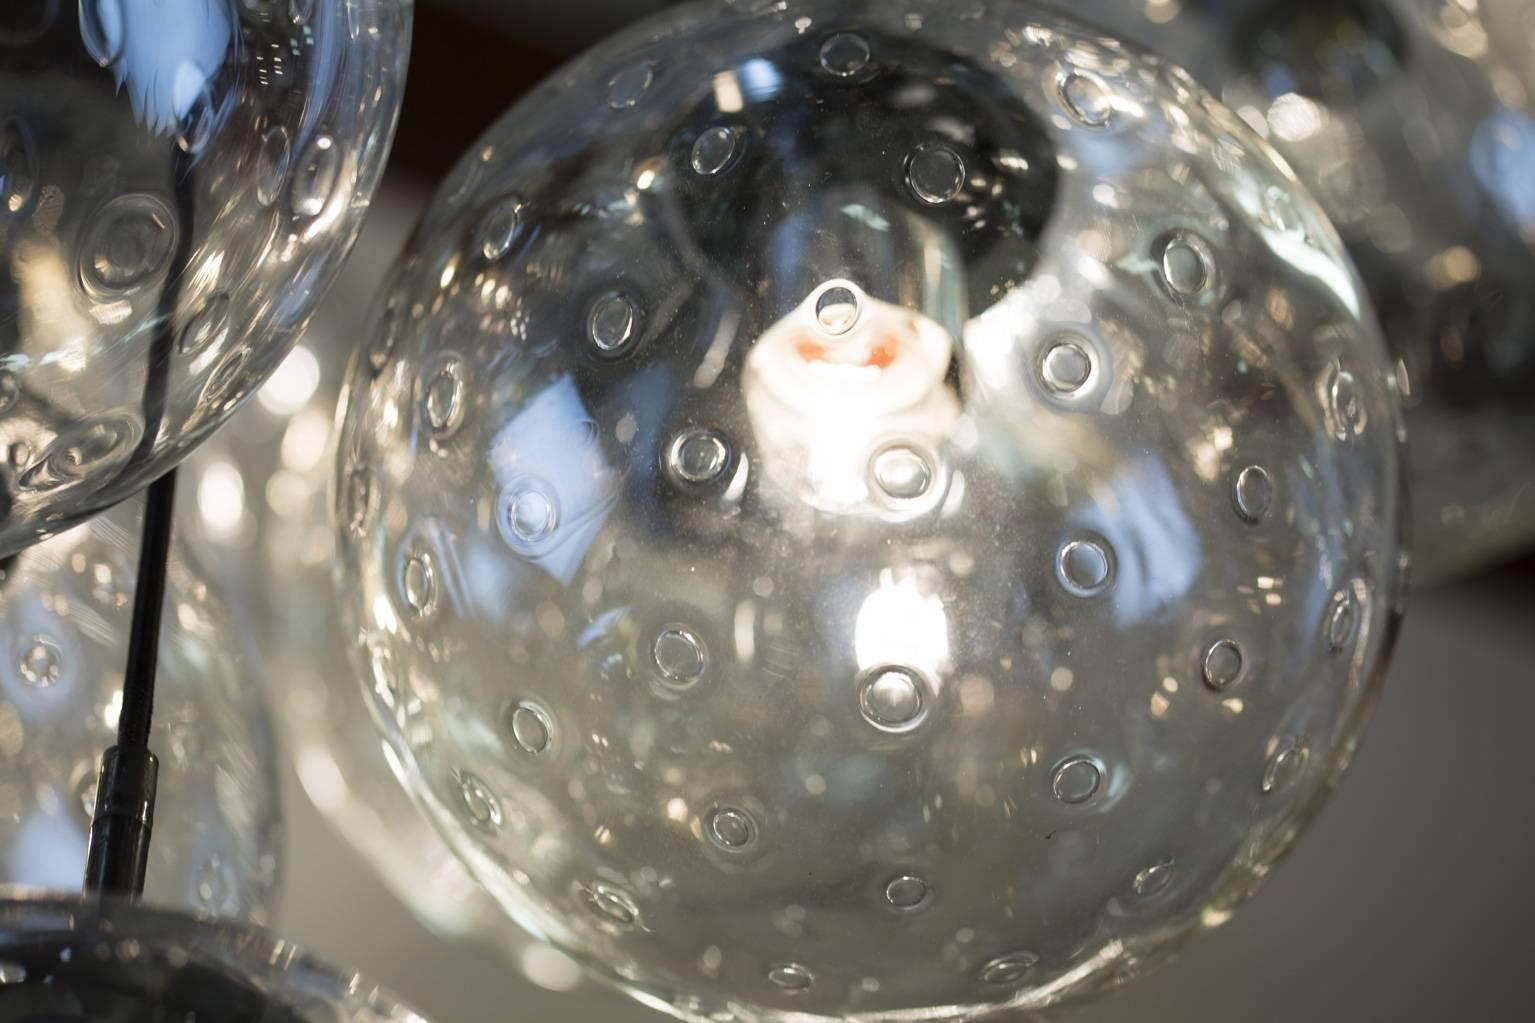 Très grand et impressionnant lustre à boules de verre RAAK.
20 boules en verre faites à la main avec des ampoules à air.
Le diamètre du lustre est de 45,28 pouces.
Le diamètre de chaque boule de verre est de 13,8 pouces.
La hauteur totale réelle